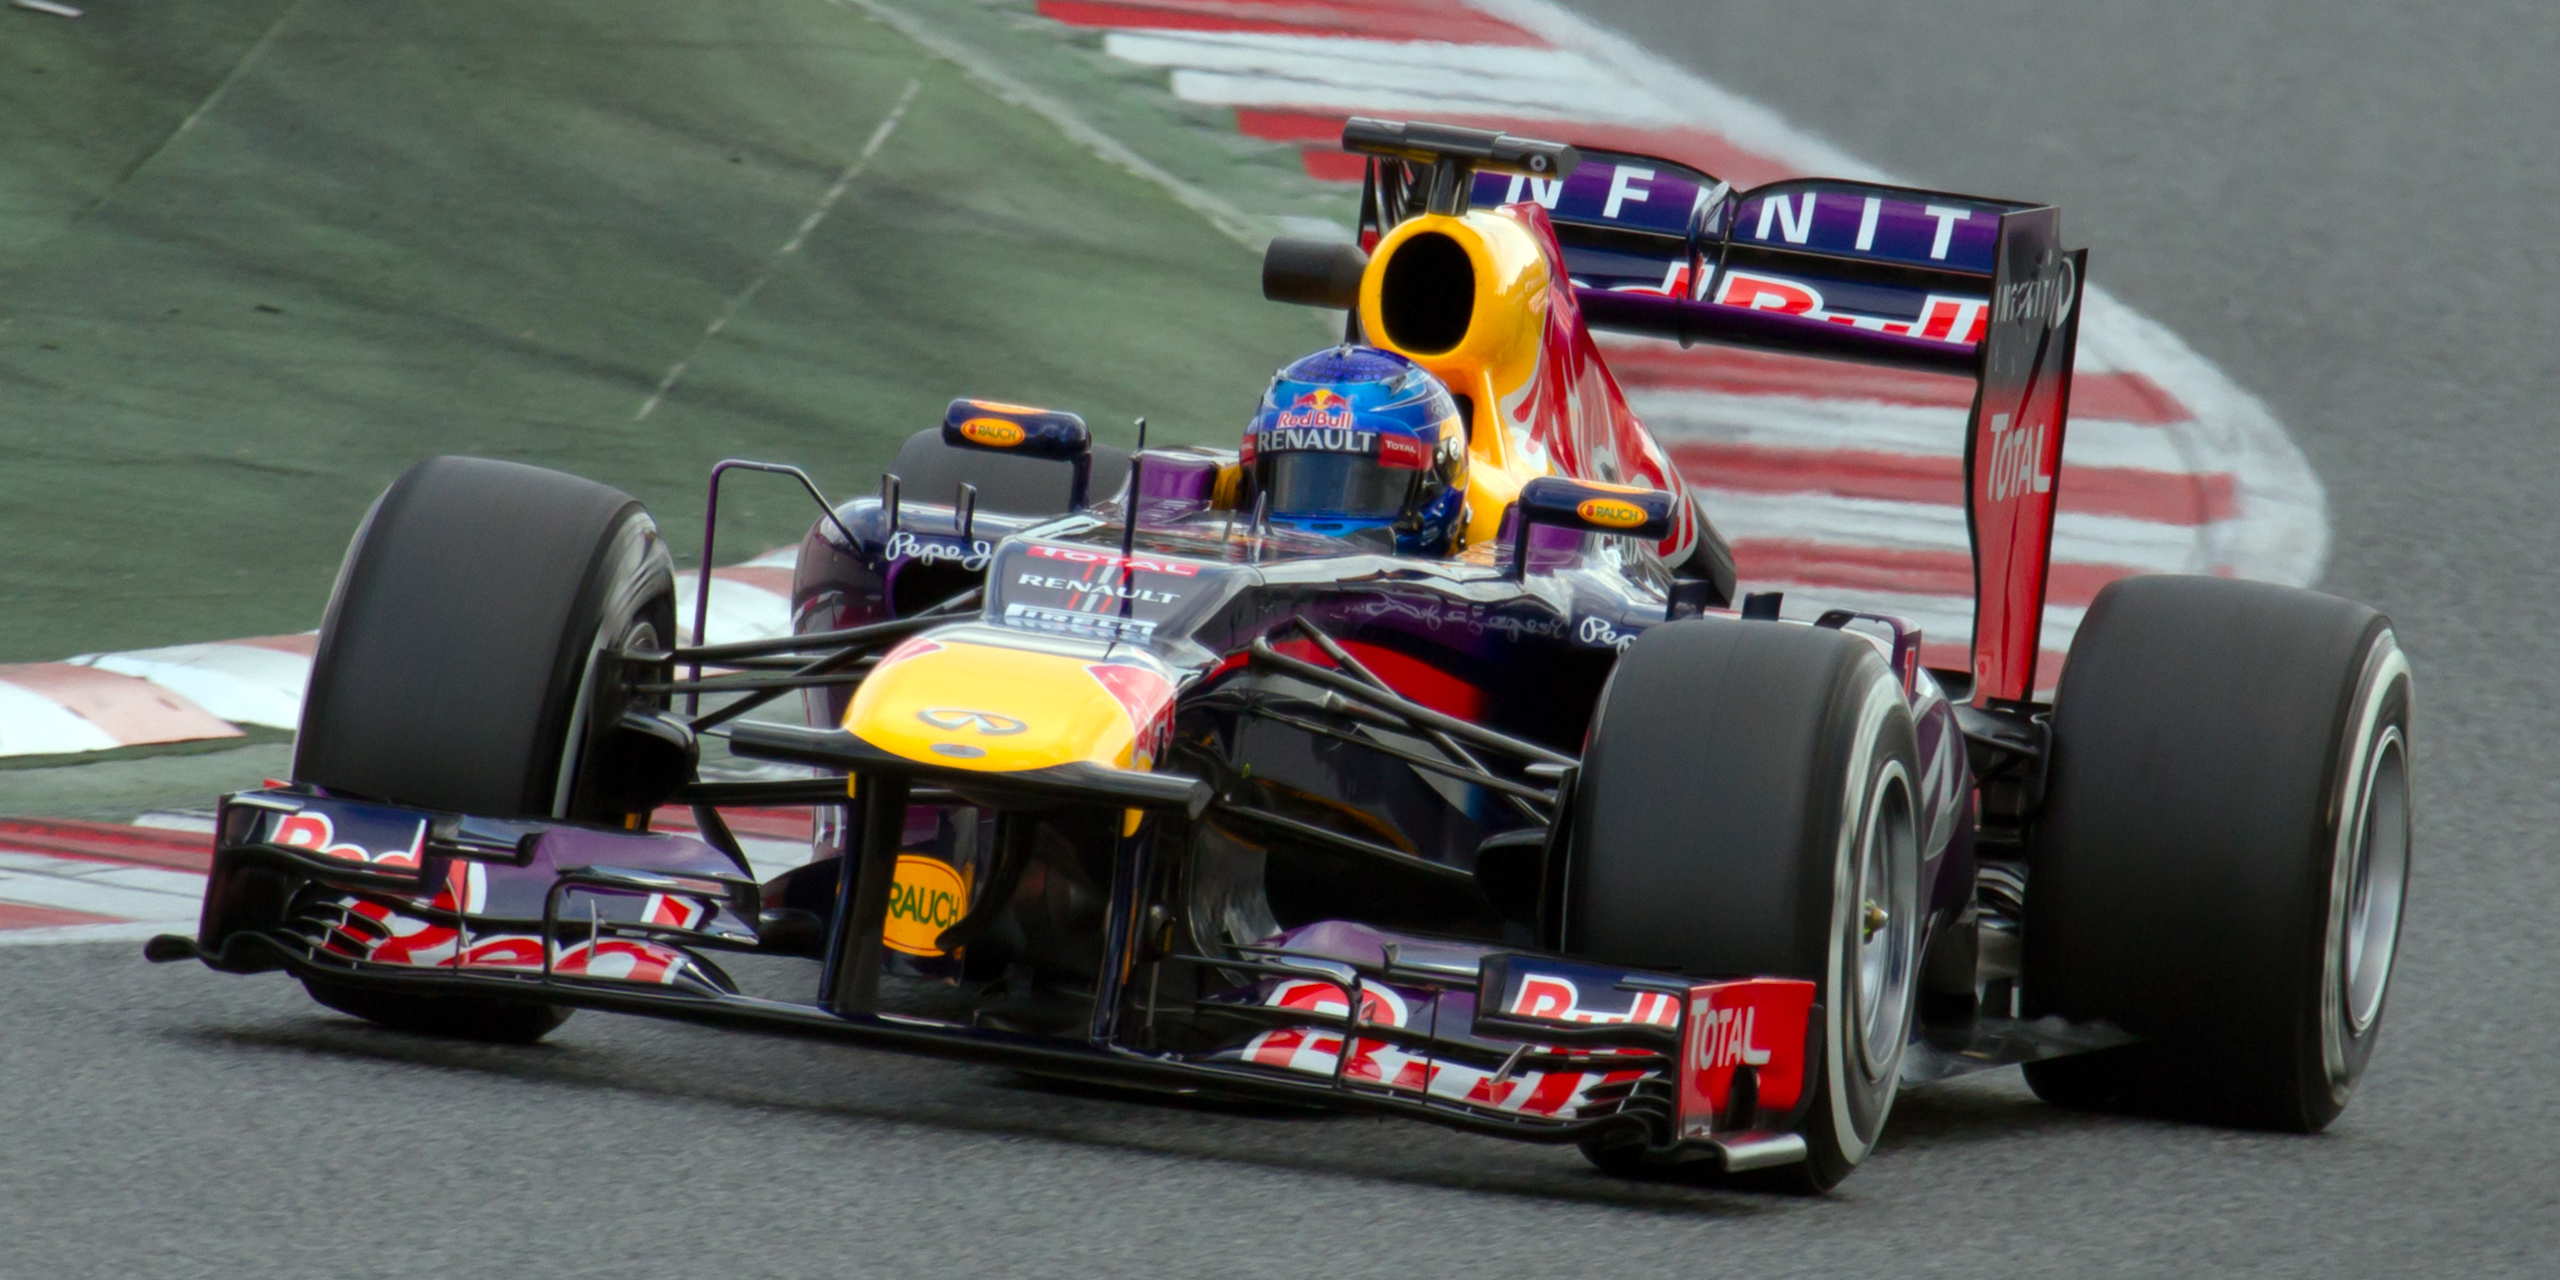 F1 2013: German GP Review - Vettel breaks his German jinx